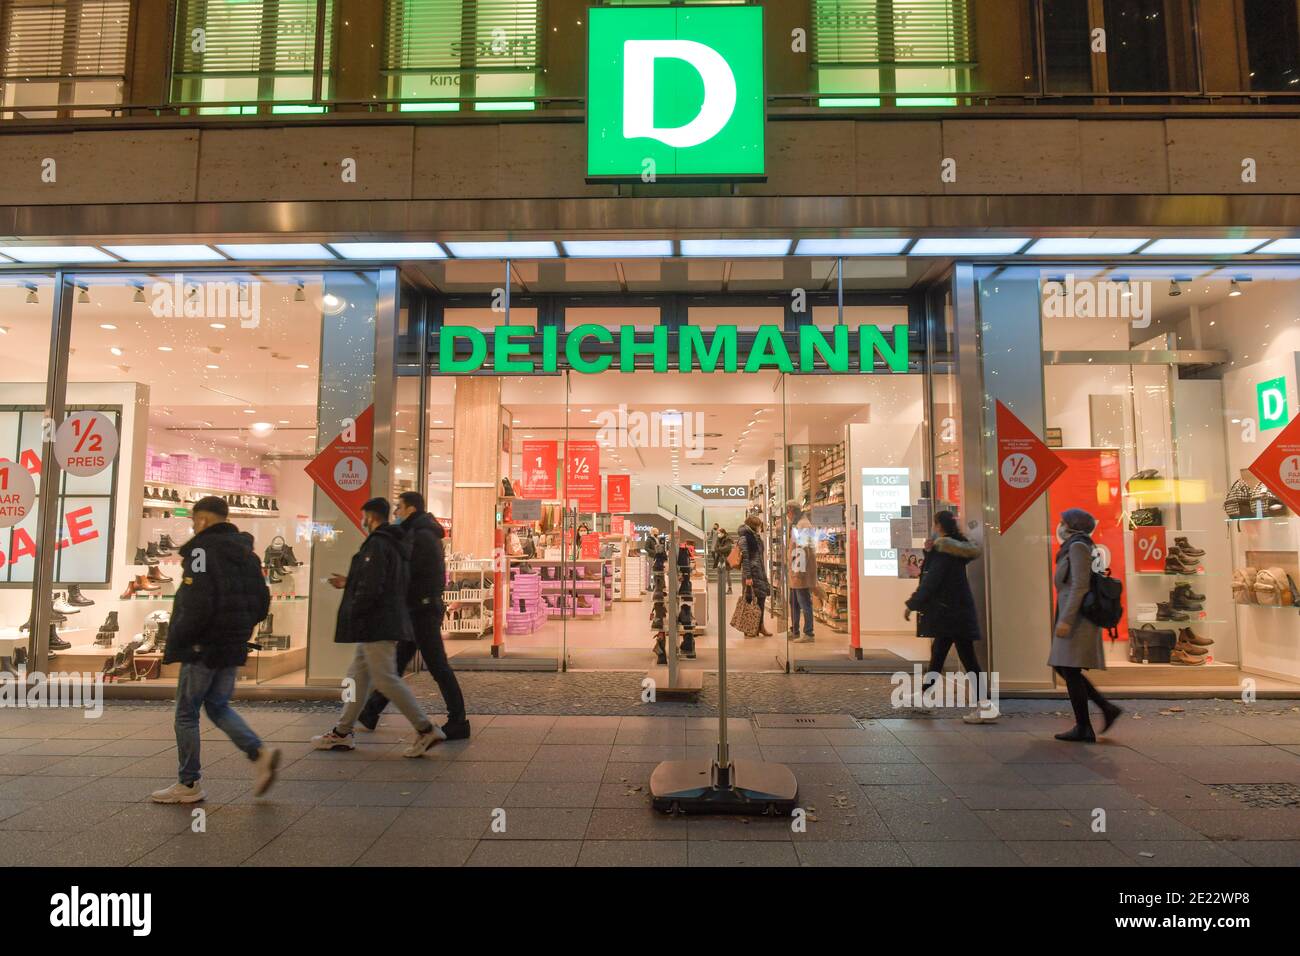 Deichmann Schuhgeschäft, Tauentzienstraße, Berlin, Deutschland Photo Alamy